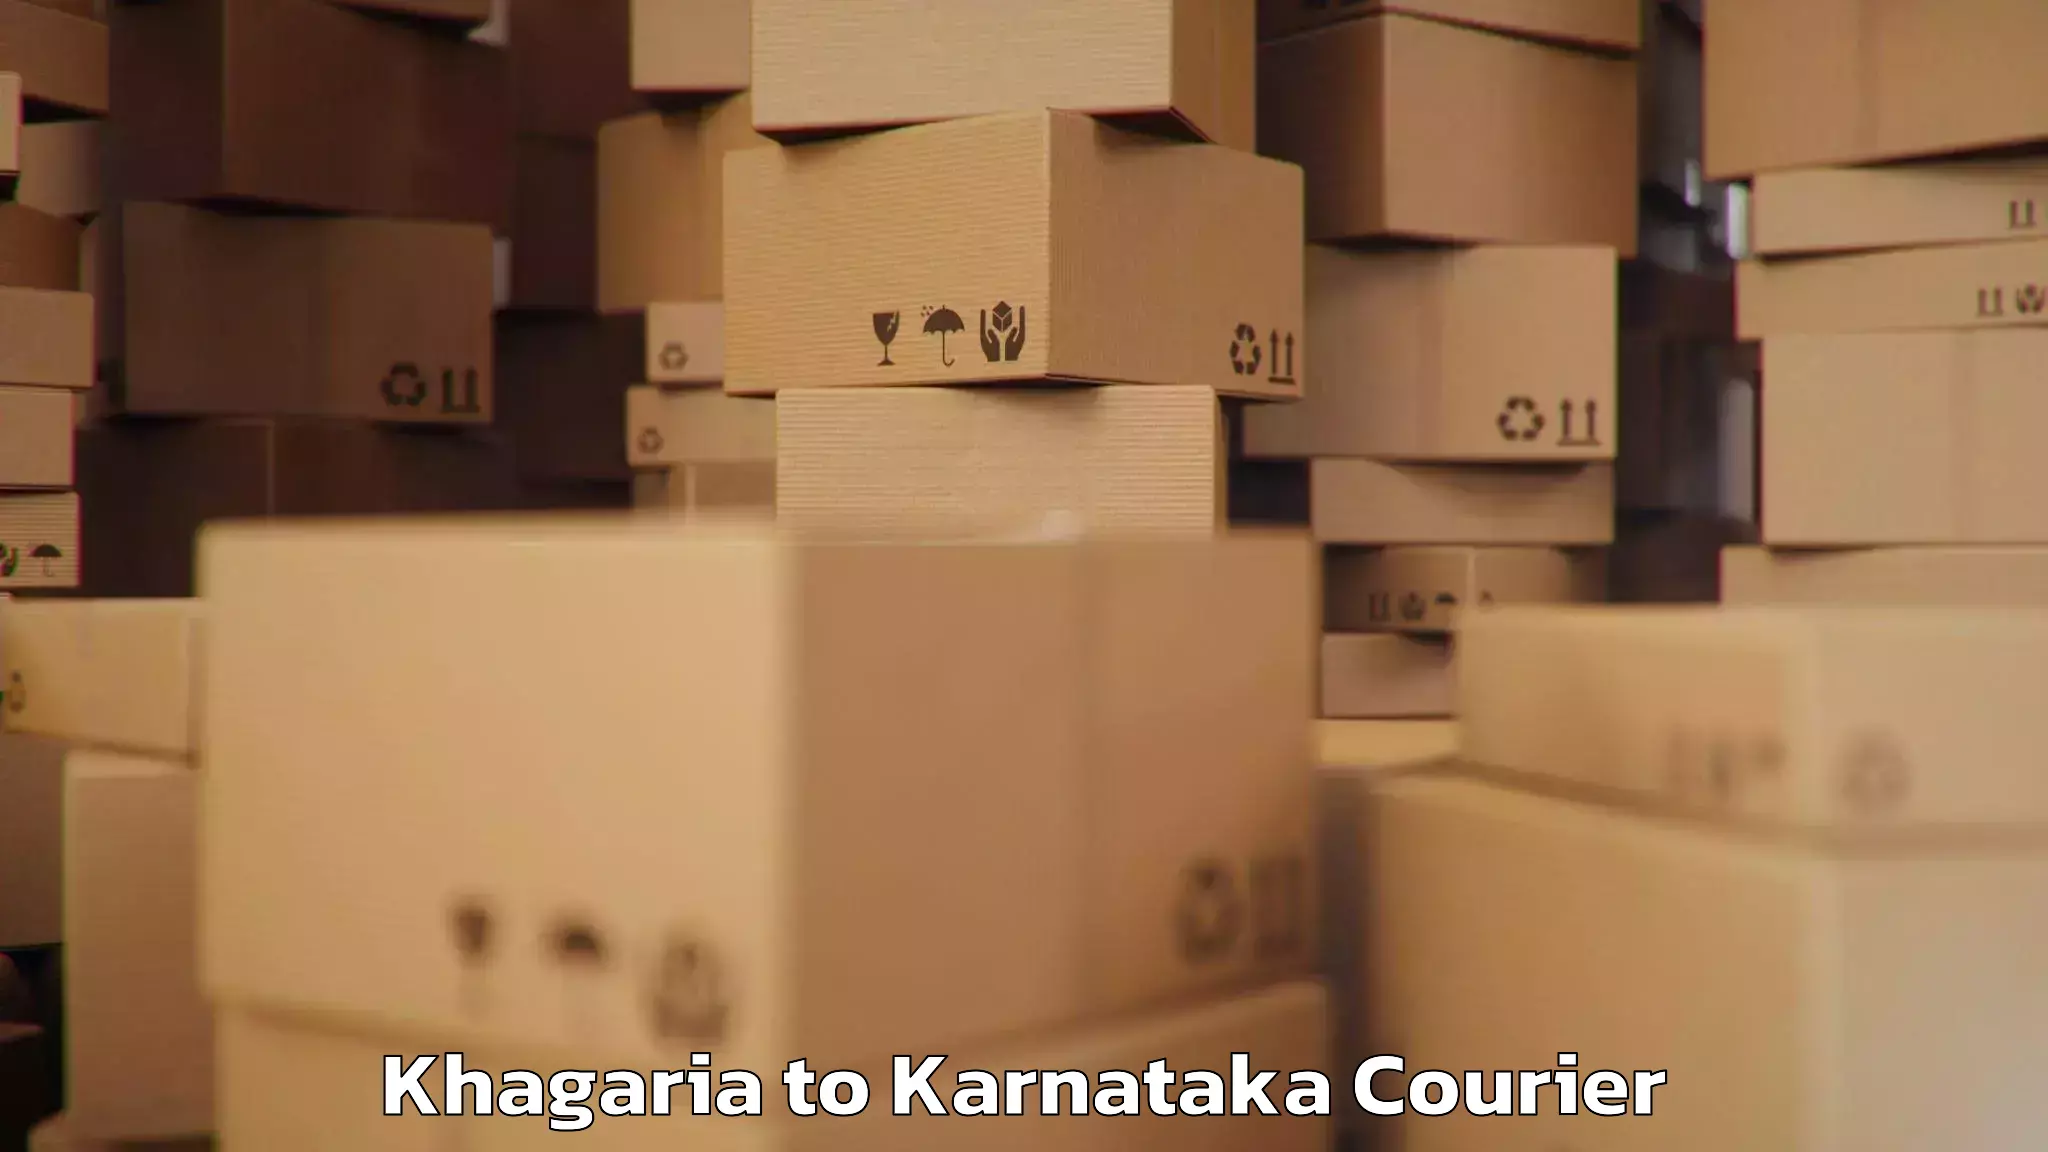 Luggage transport company Khagaria to Shikaripur